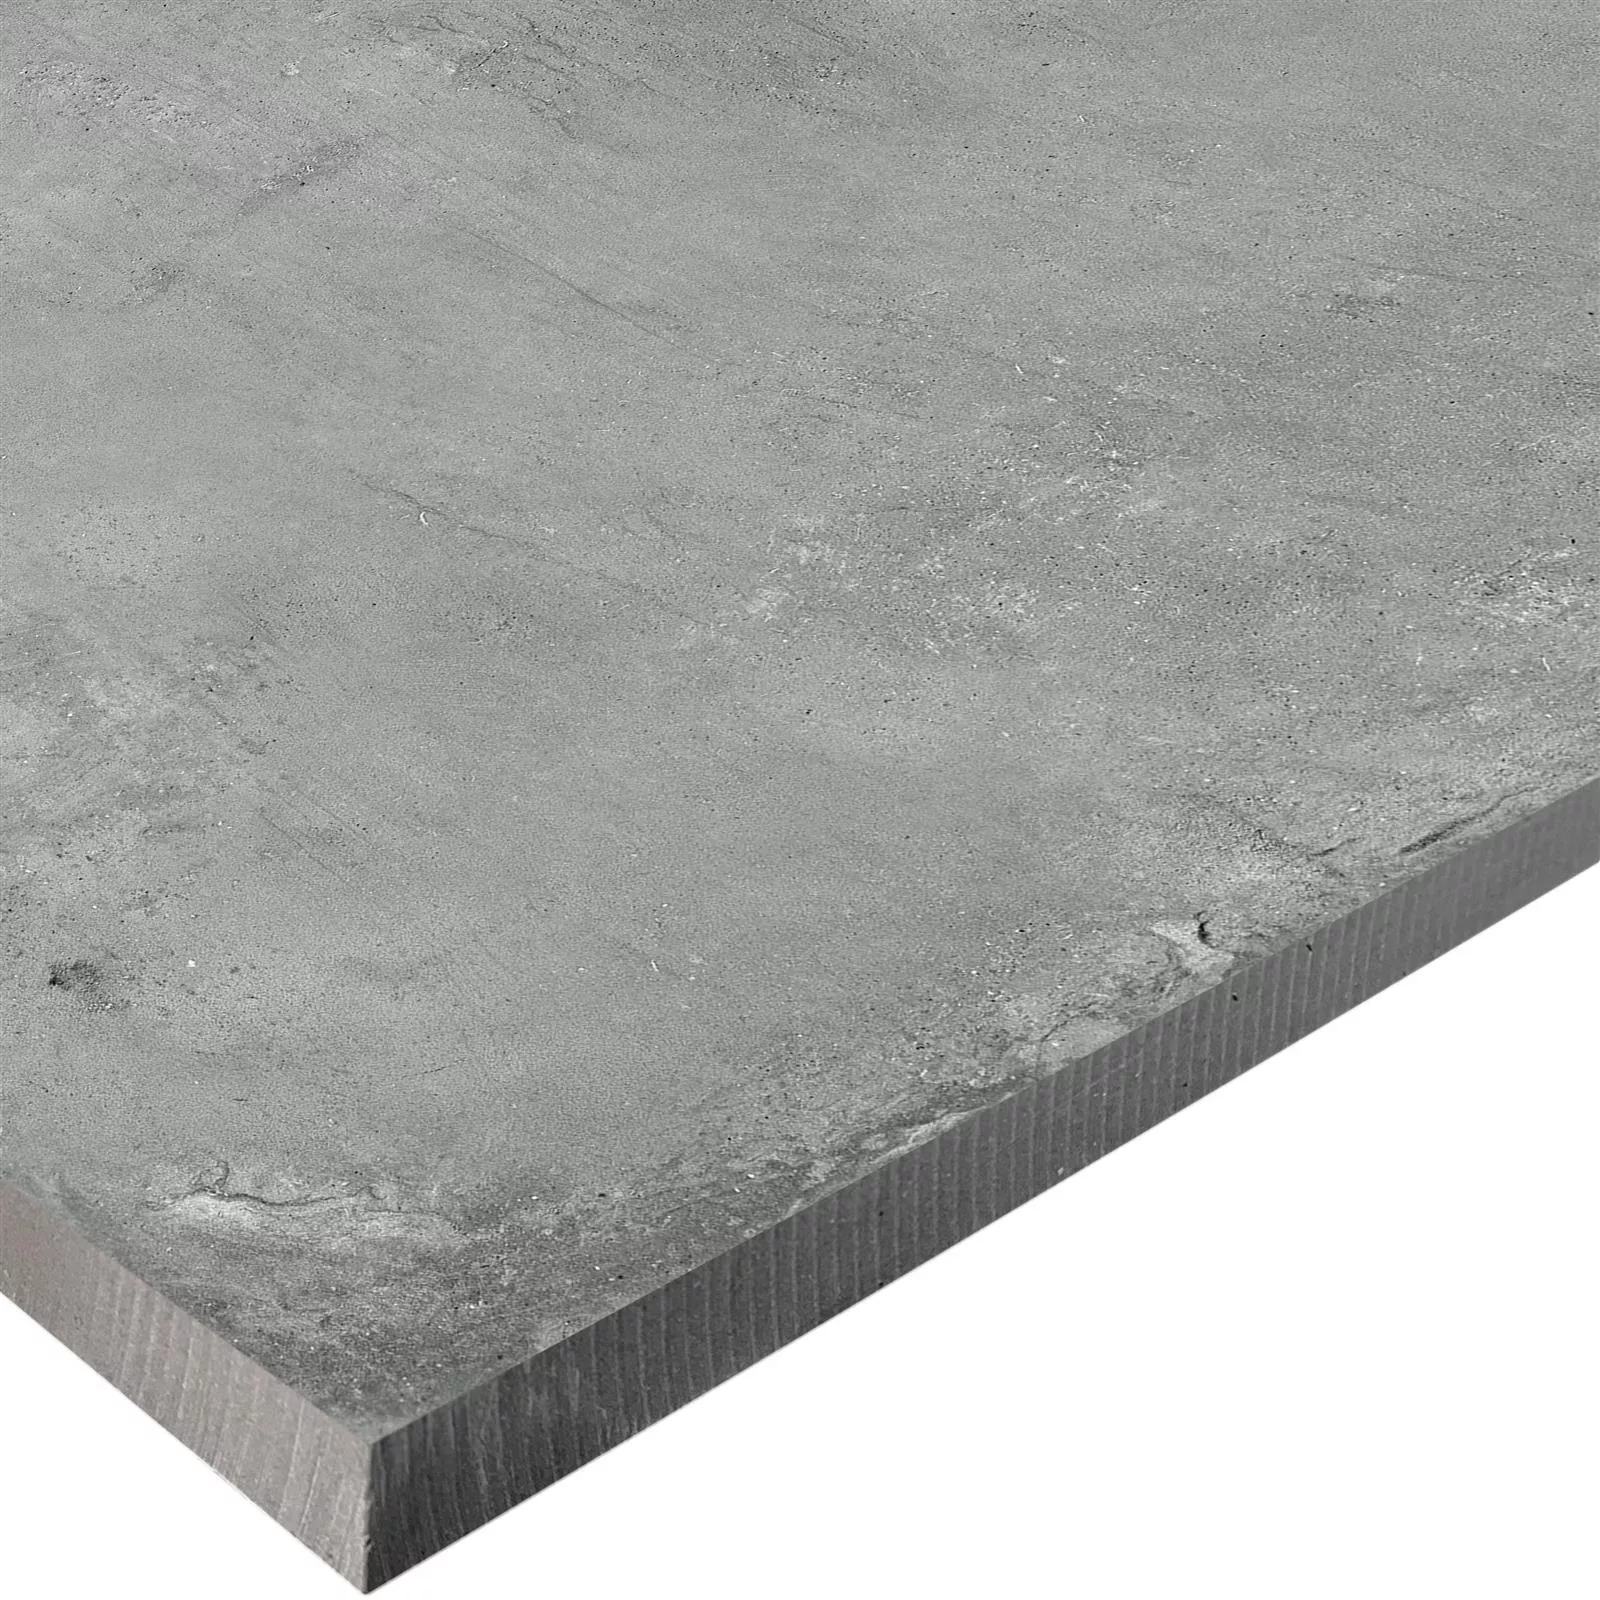 Sample Terrace Tiles Cement Optic Berlin Grey 60x60cm